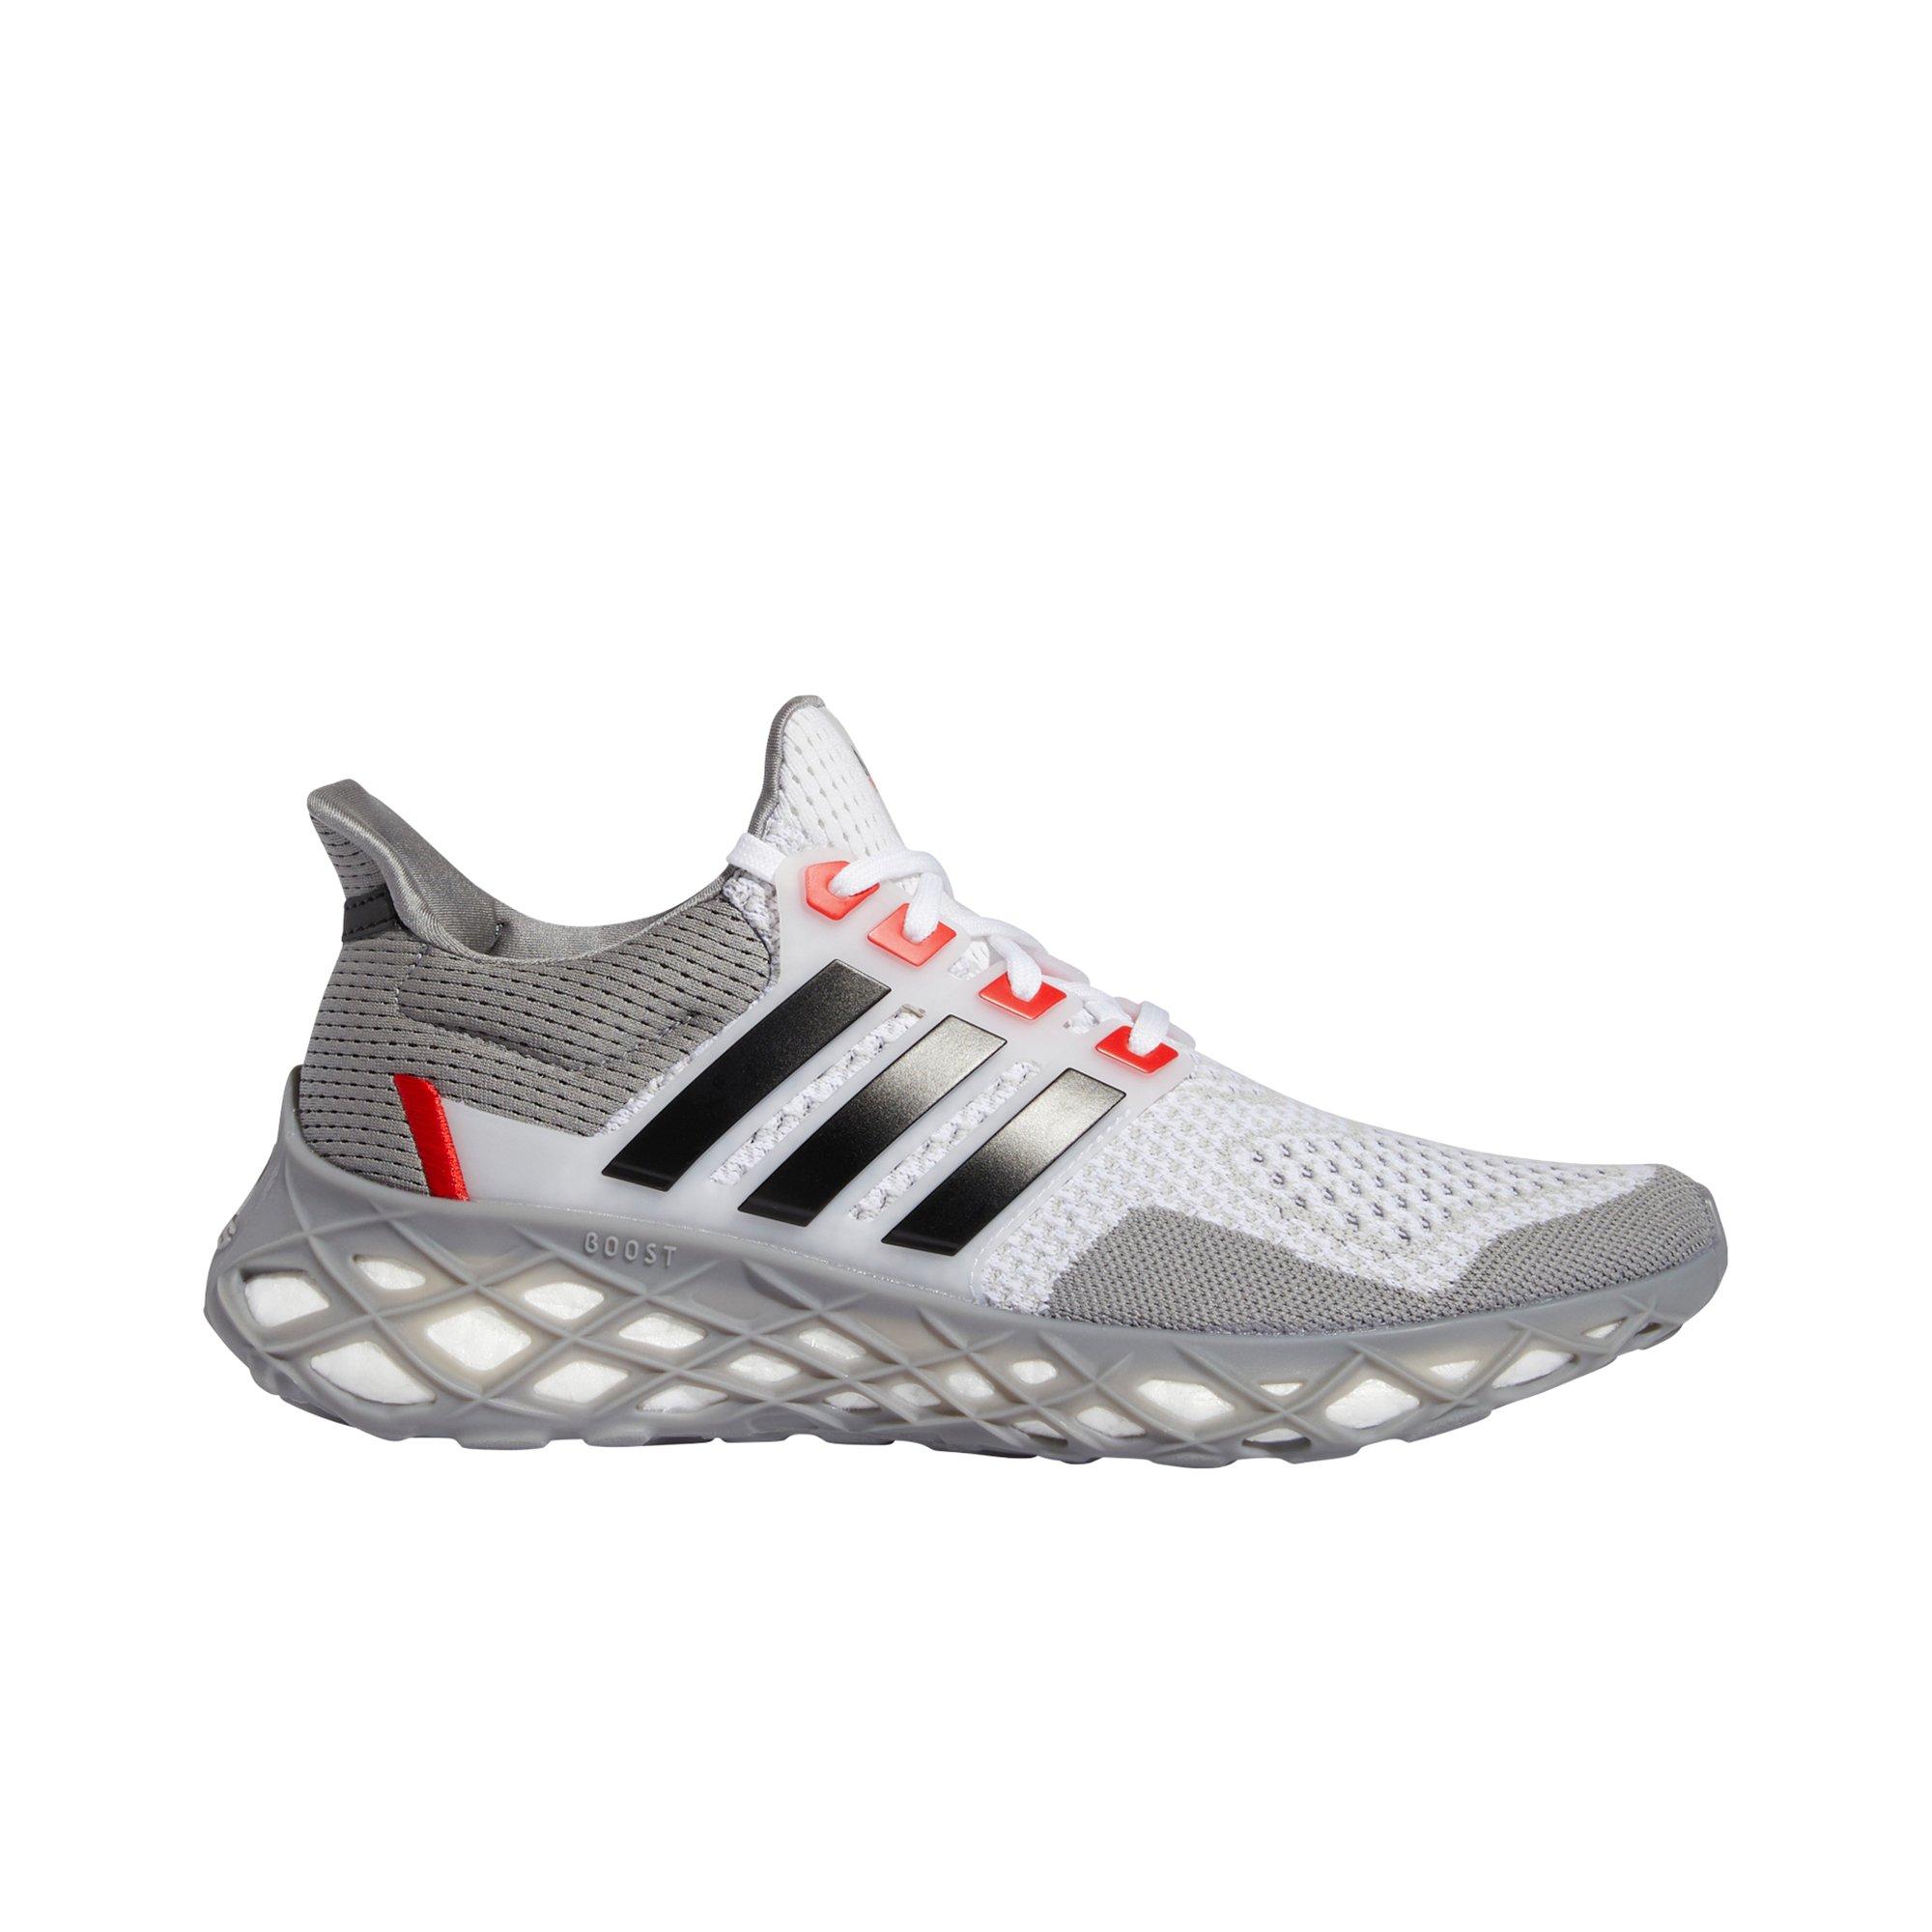 Veronderstellen ijzer Delegatie adidas Ultraboost Web DNA "Grey One/Core Black" Vivid Red" Men's Running  Shoe